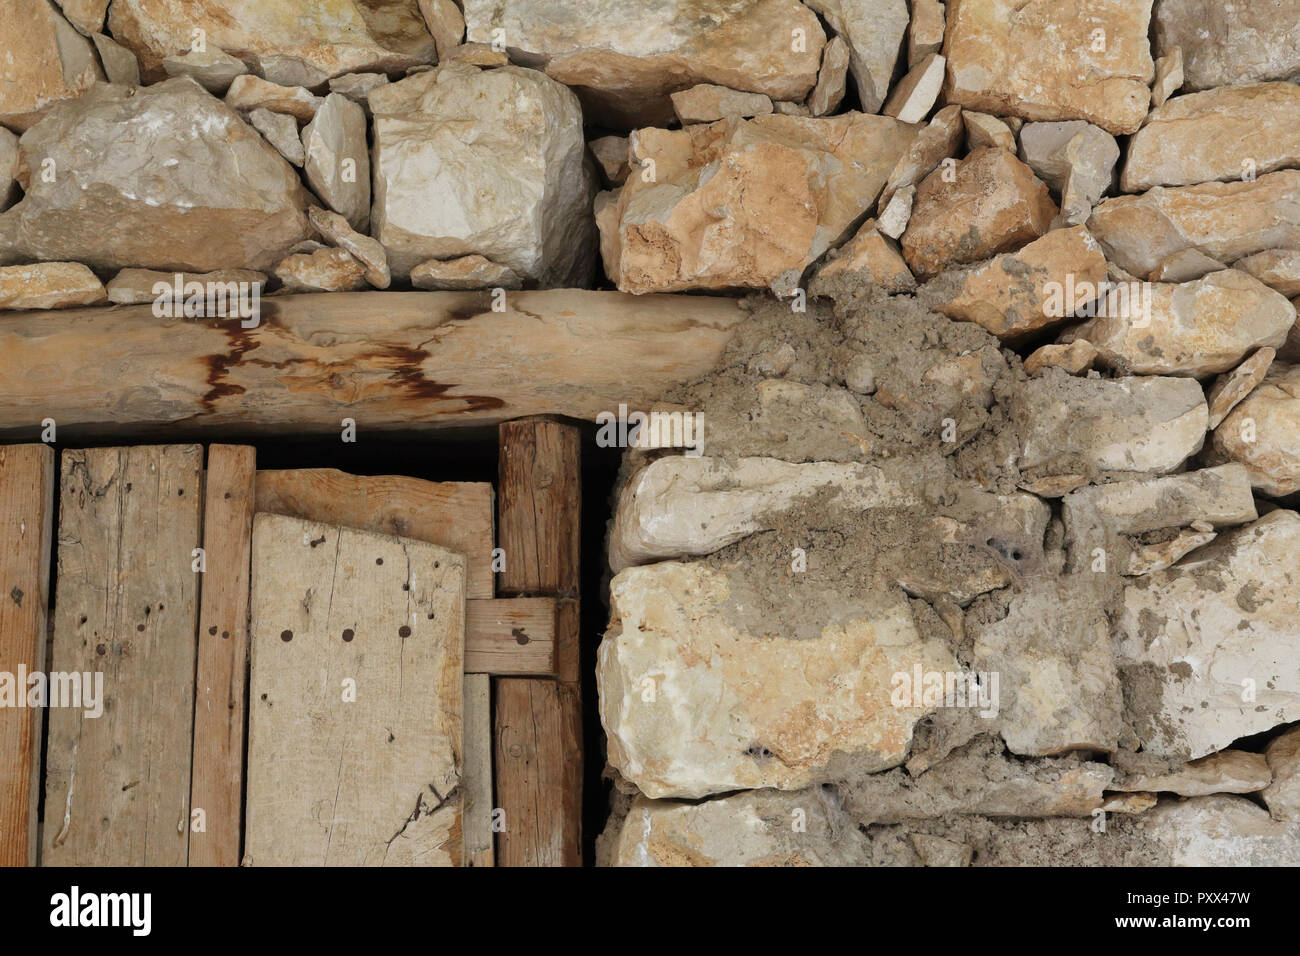 Il dettaglio di una porta di legno e giunto di un ricovero per il bestiame in pietra del muro a secco del Barranco de la Hoz Seca canyon, Jaraba, Spagna Foto Stock